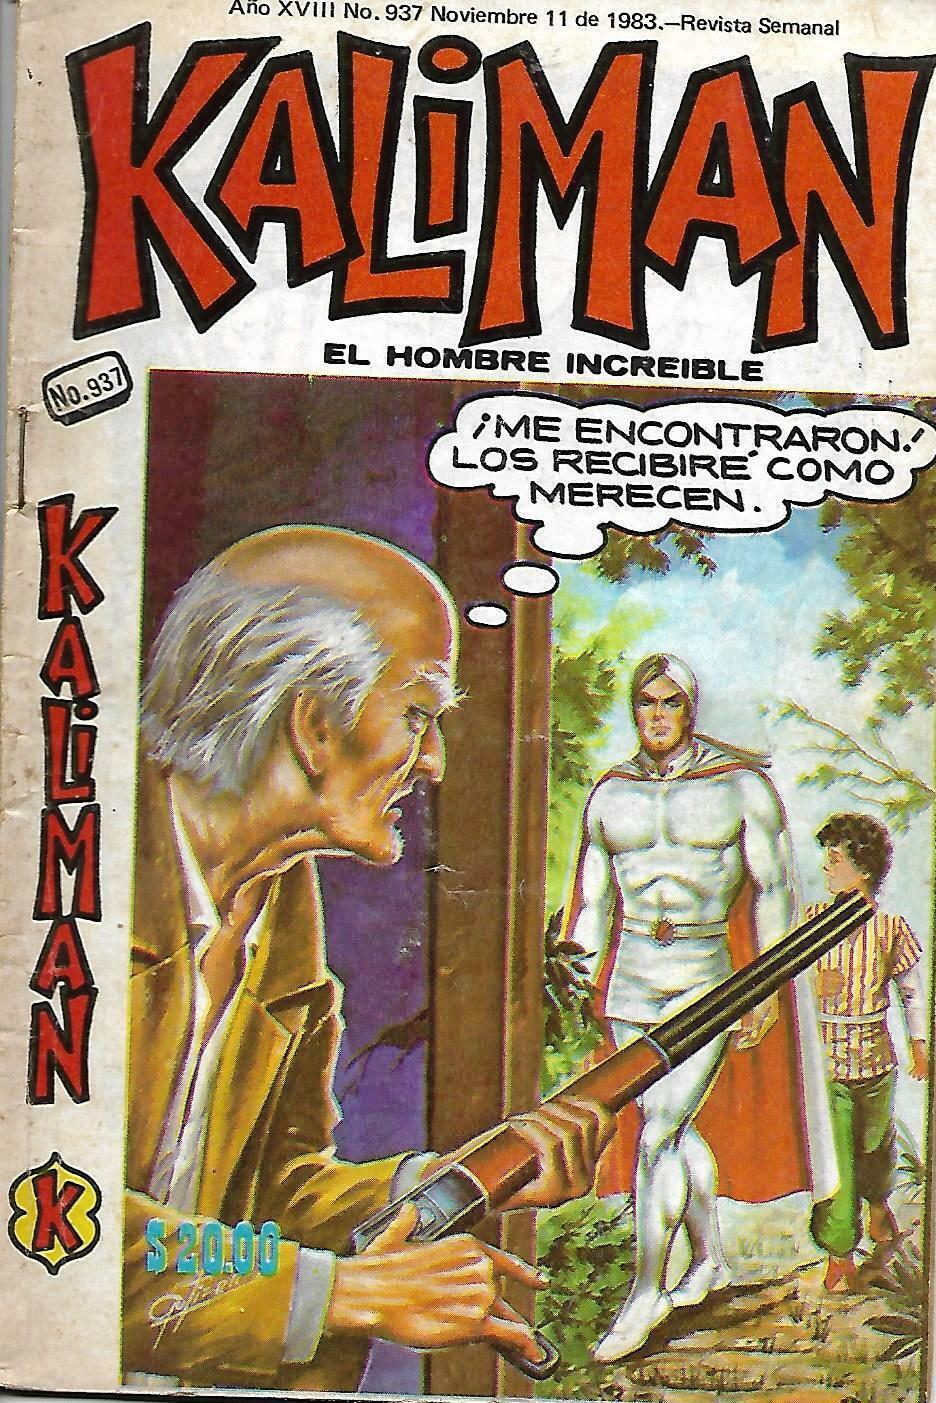 Kaliman El Hombre Increible #937 - Noviembre 11, 1983 - Mexico 